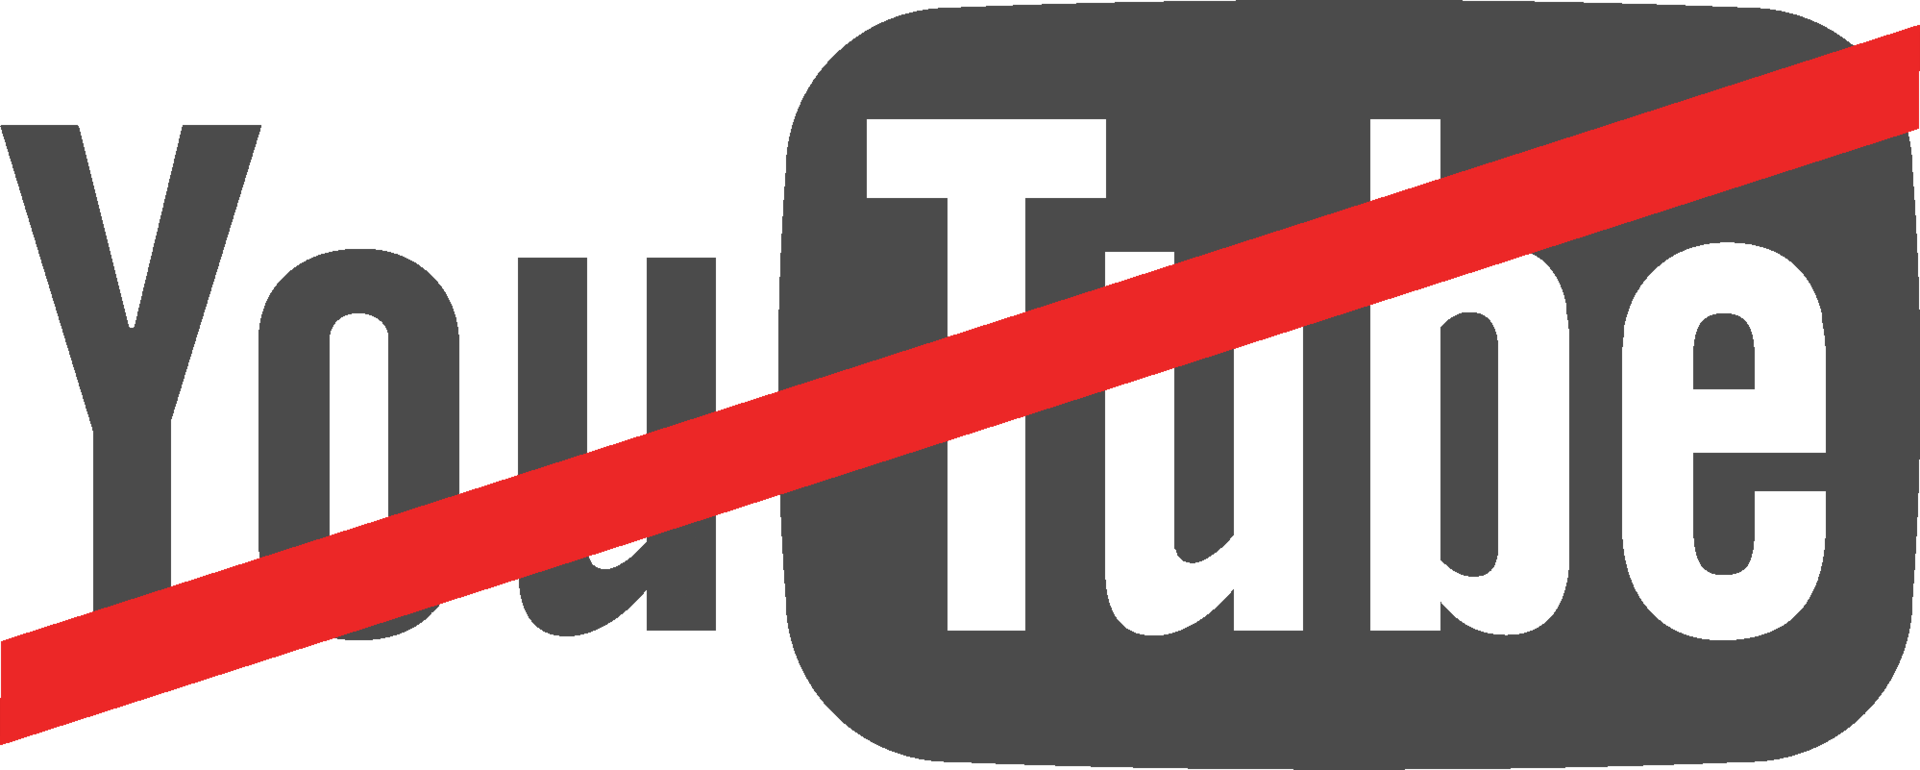 Nätjätten Youtube i stormväder kring censuranklagelser